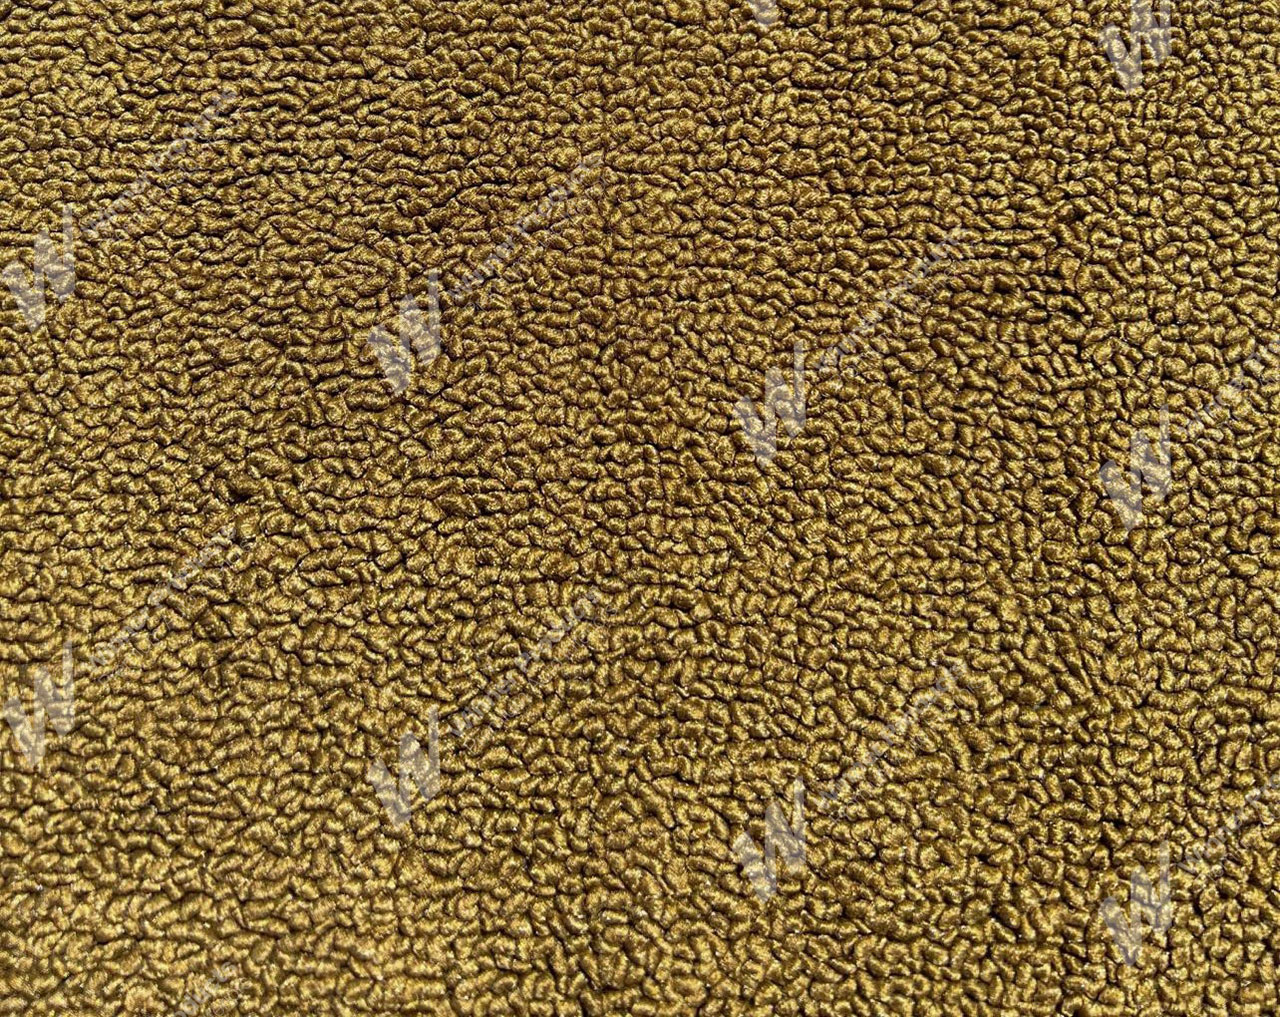 Holden Kingswood HT Kingswood Ute 11E Antique Gold Carpet (Image 1 of 1)